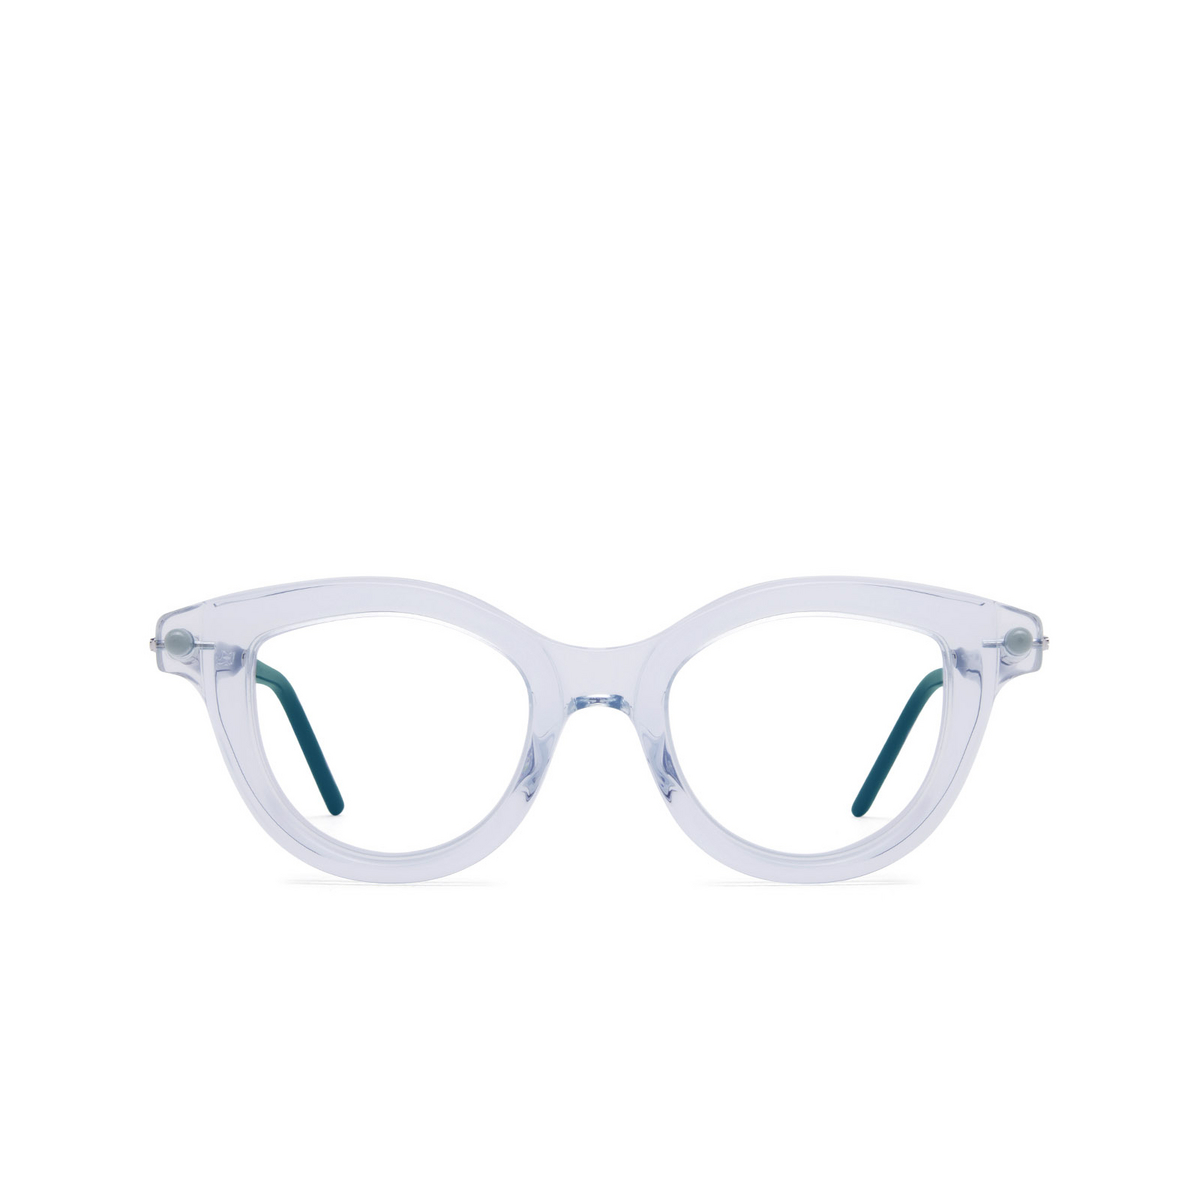 Kuboraum P7 Eyeglasses TB Teal Blue - 1/4